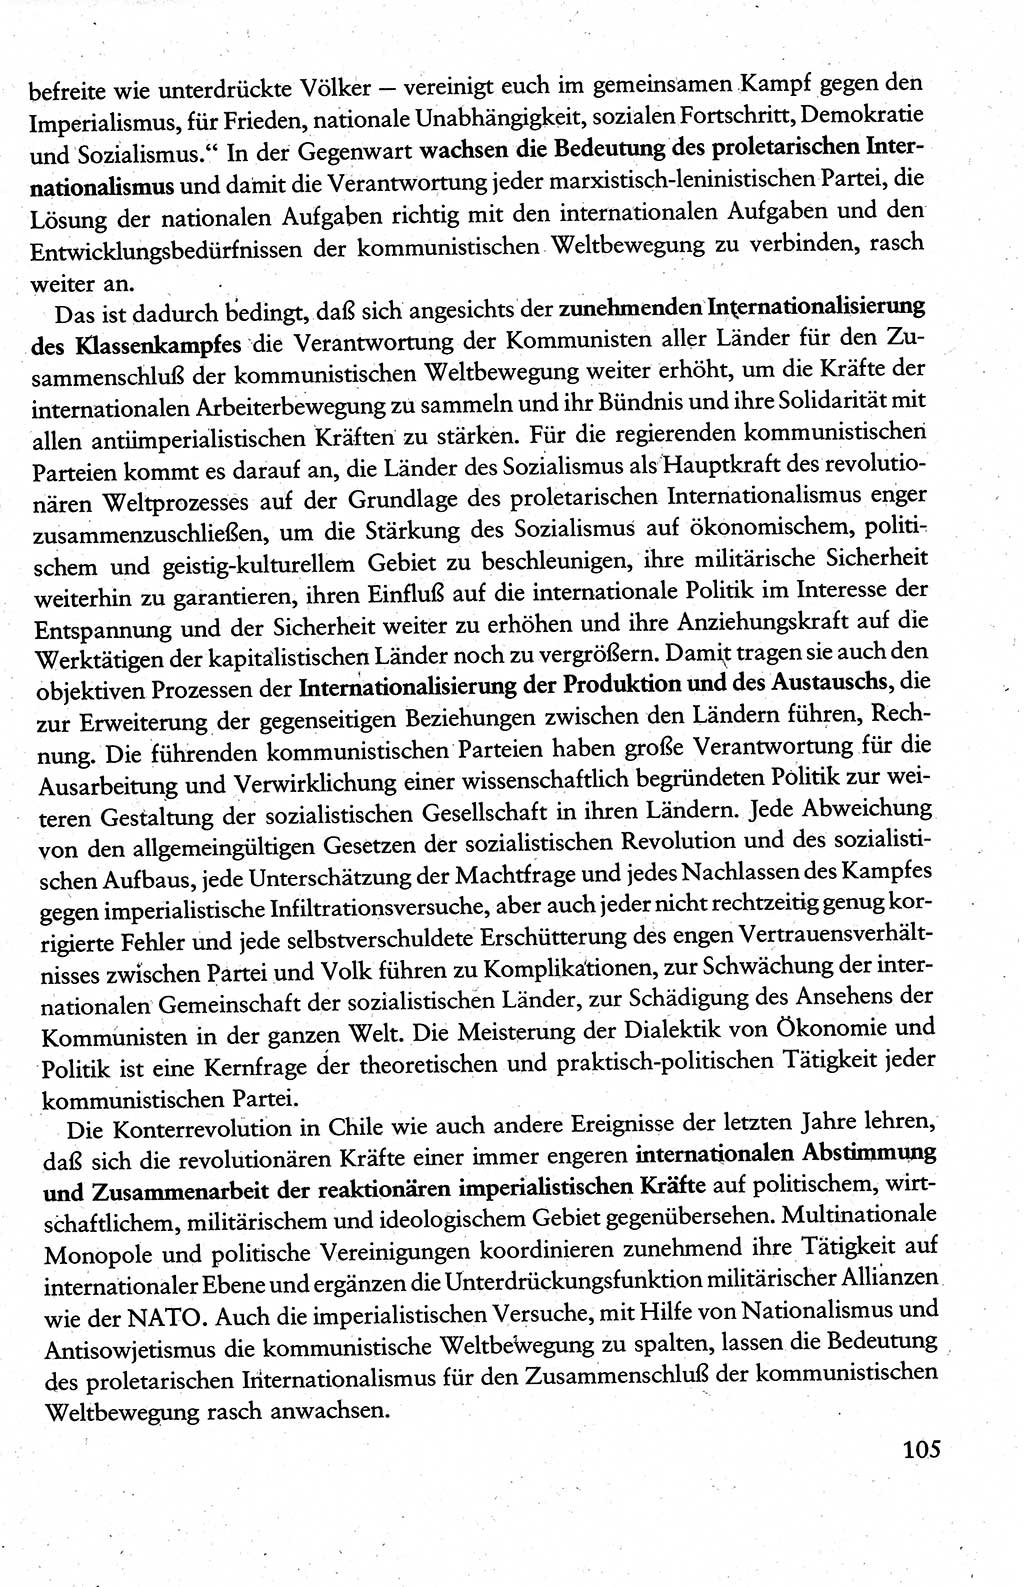 Wissenschaftlicher Kommunismus [Deutsche Demokratische Republik (DDR)], Lehrbuch für das marxistisch-leninistische Grundlagenstudium 1983, Seite 105 (Wiss. Komm. DDR Lb. 1983, S. 105)